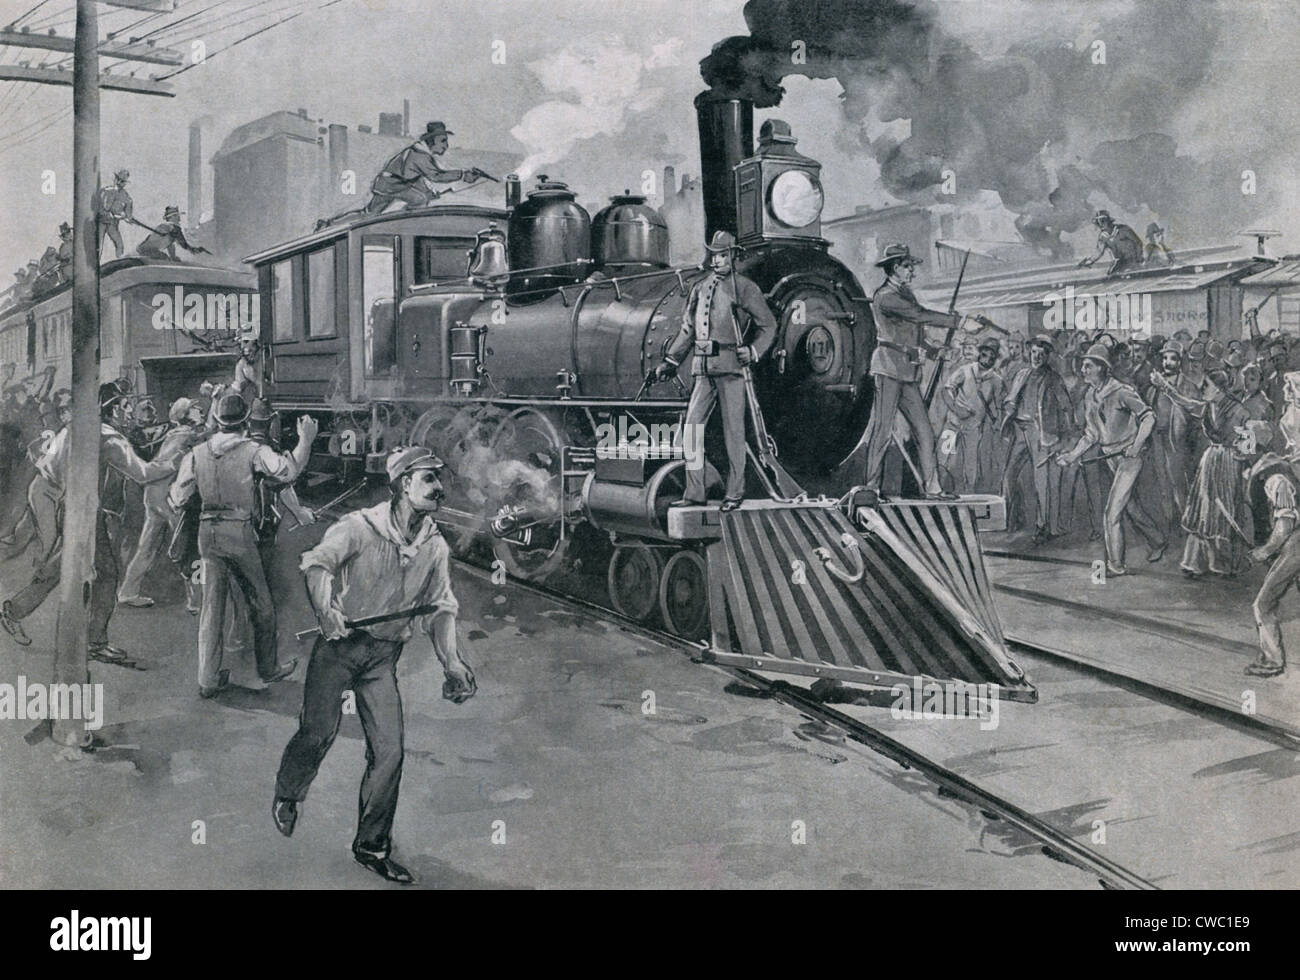 Un train de la garde des troupes fédérales contre les grévistes pendant la grève Pullman. Juillet 1894. Banque D'Images